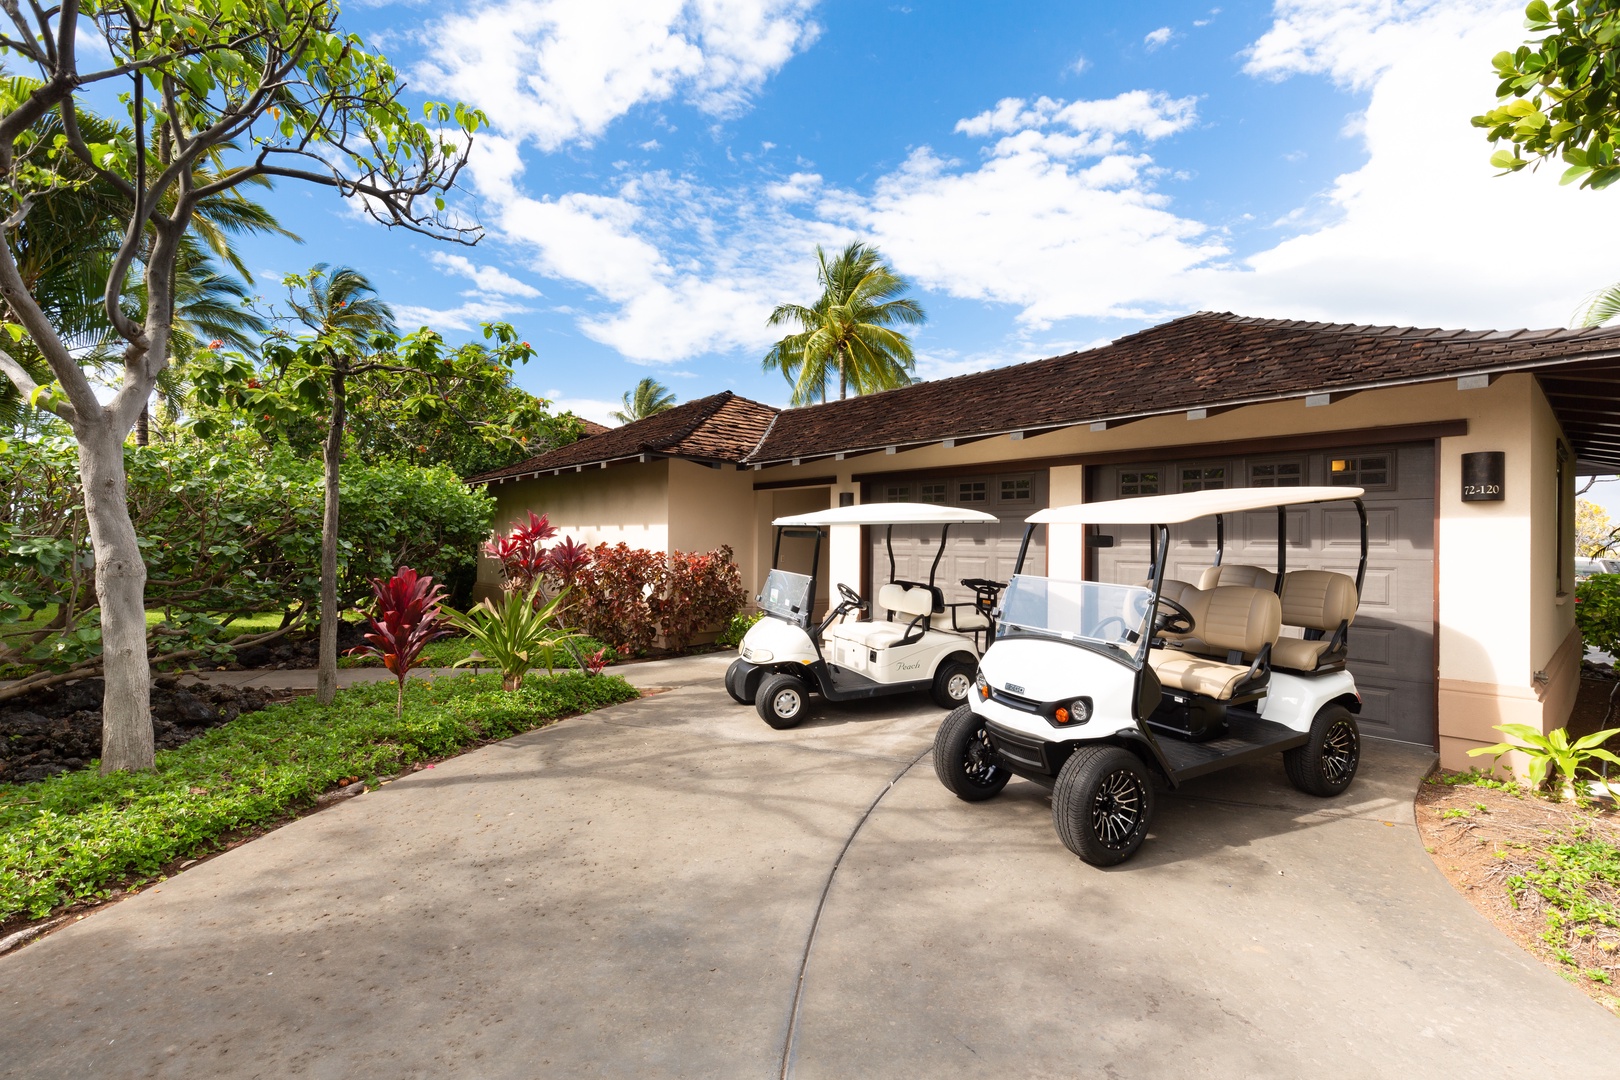 Kailua-Kona Vacation Rentals, 3BD Hali'ipua Villa (120) at Four Seasons Resort at Hualalai - This rental is equipped with TWO golf carts!